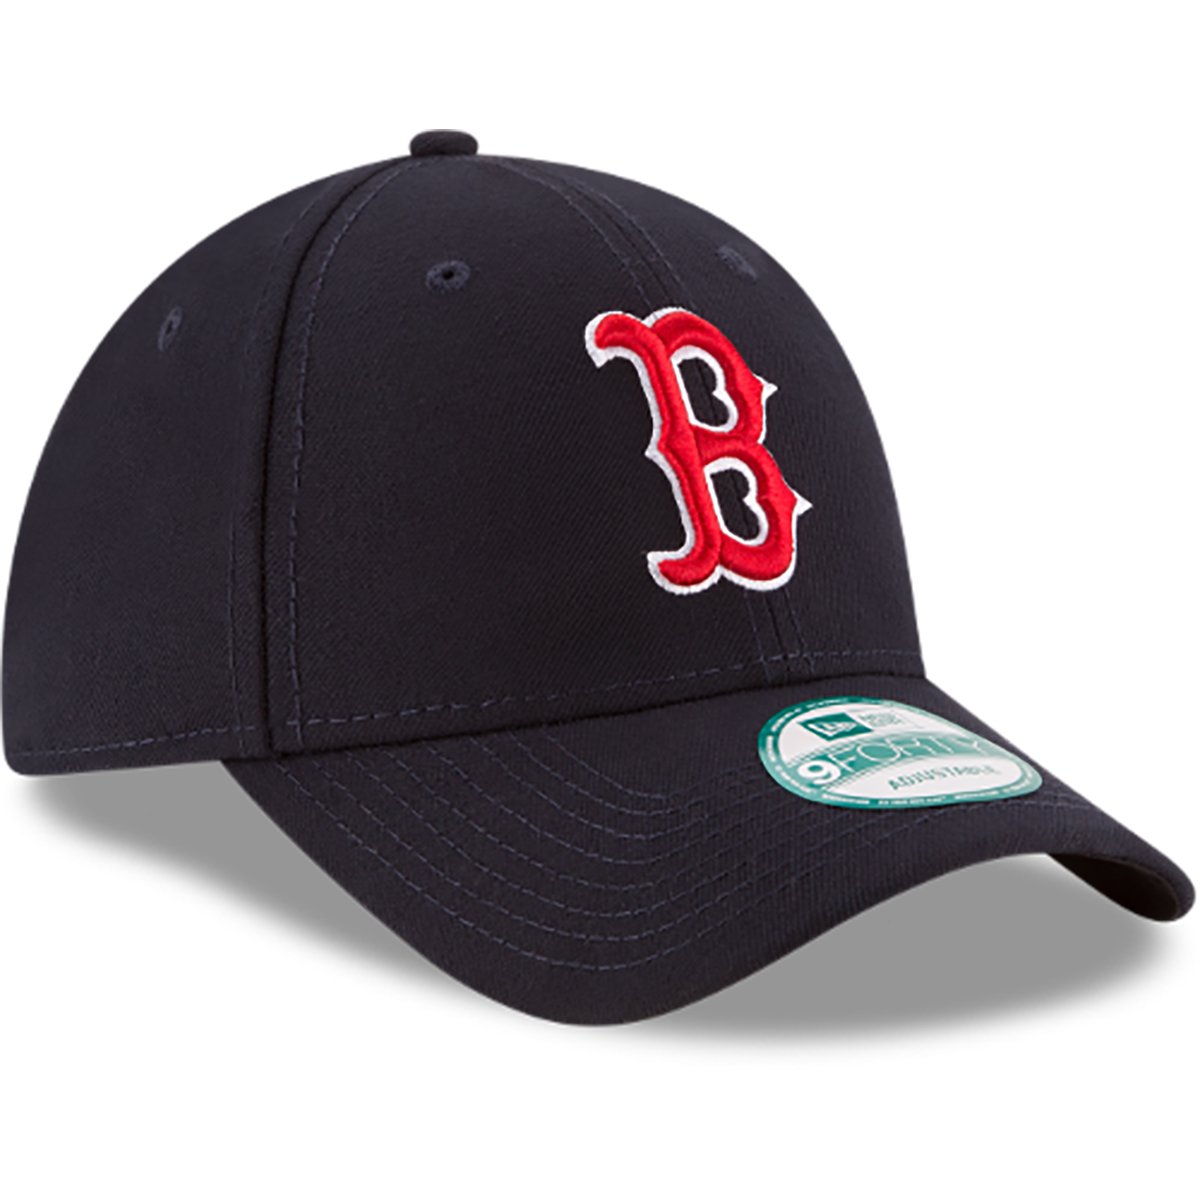 Gorra Deportiva New Era Mlb Boston Red Sox